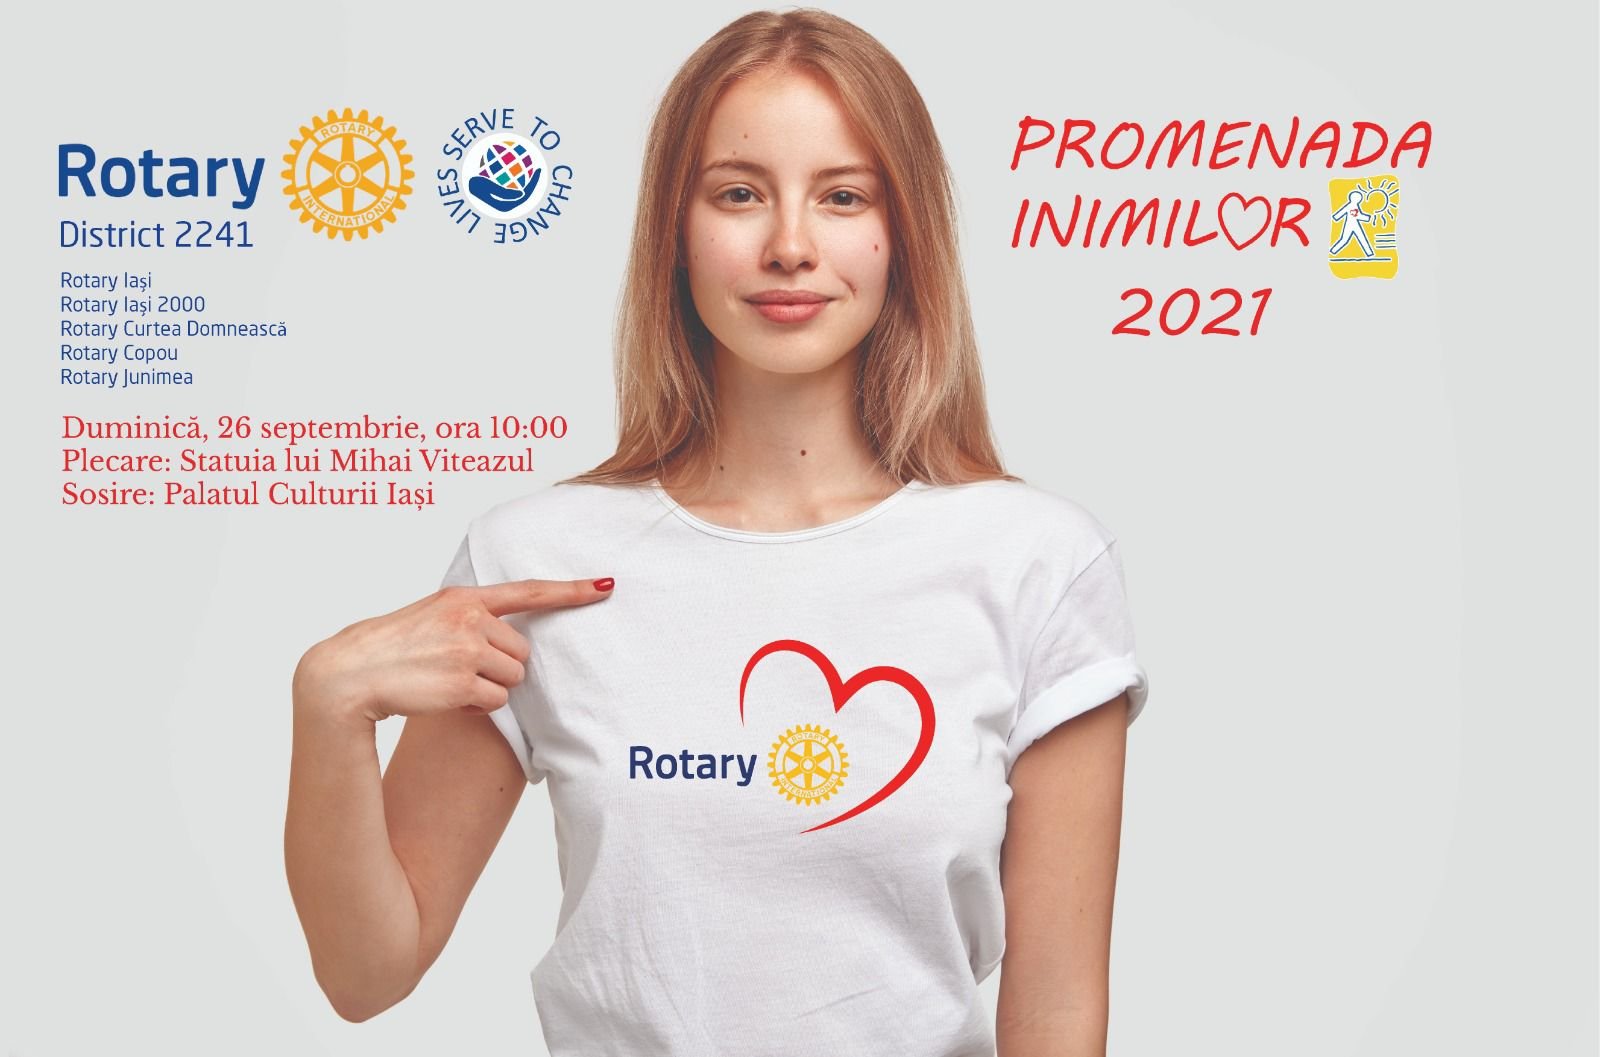  Cluburile Rotary din Iasi organizează Promenada Inimilor in acest weekend